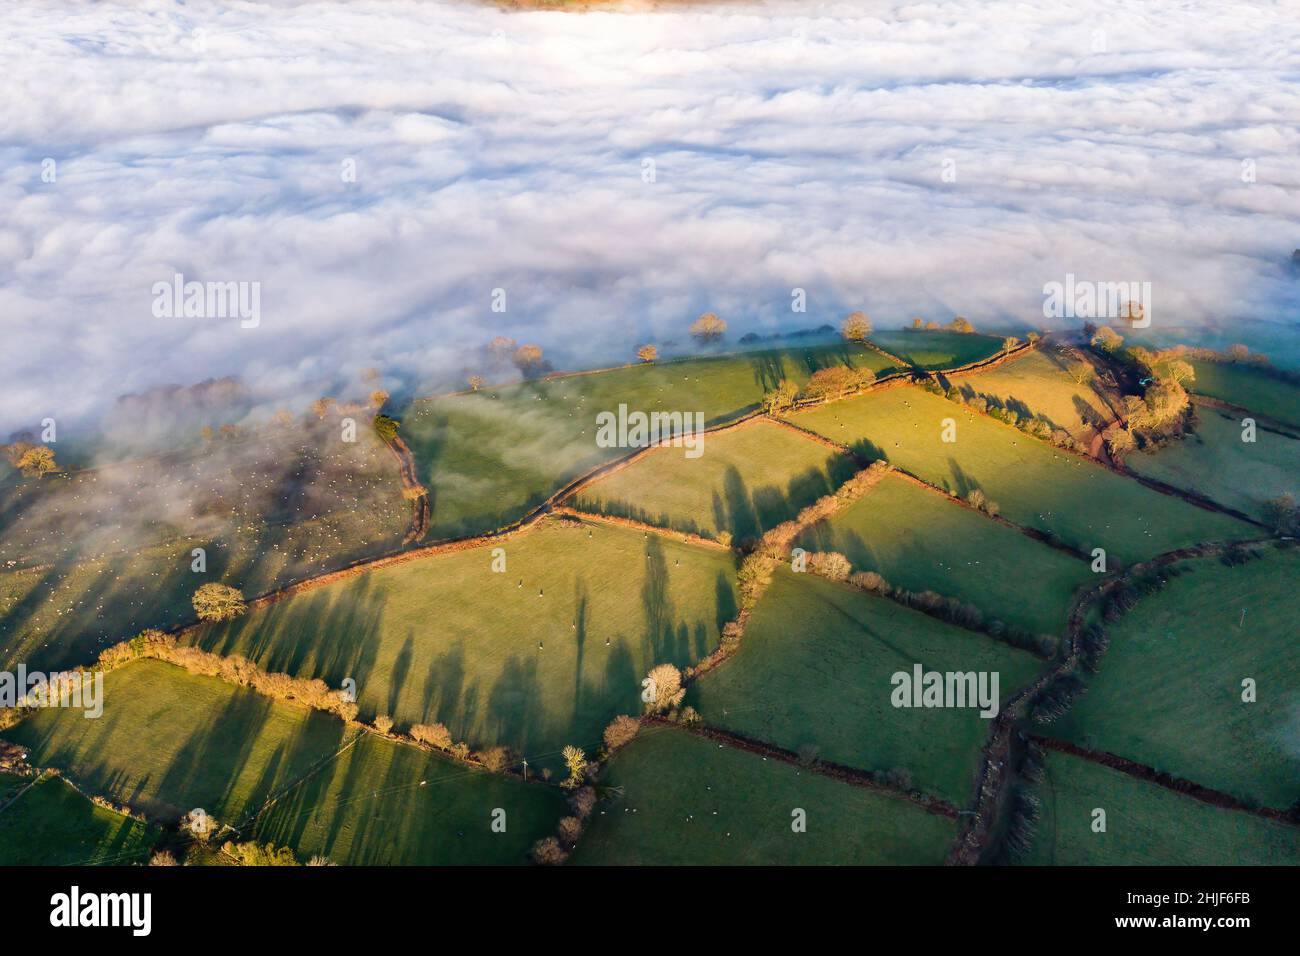 Vista aerea di una valle piena di nebbia circondata da terreni agricoli rurali al sole del pomeriggio (Brecon Beacons, Galles, Regno Unito) Foto Stock